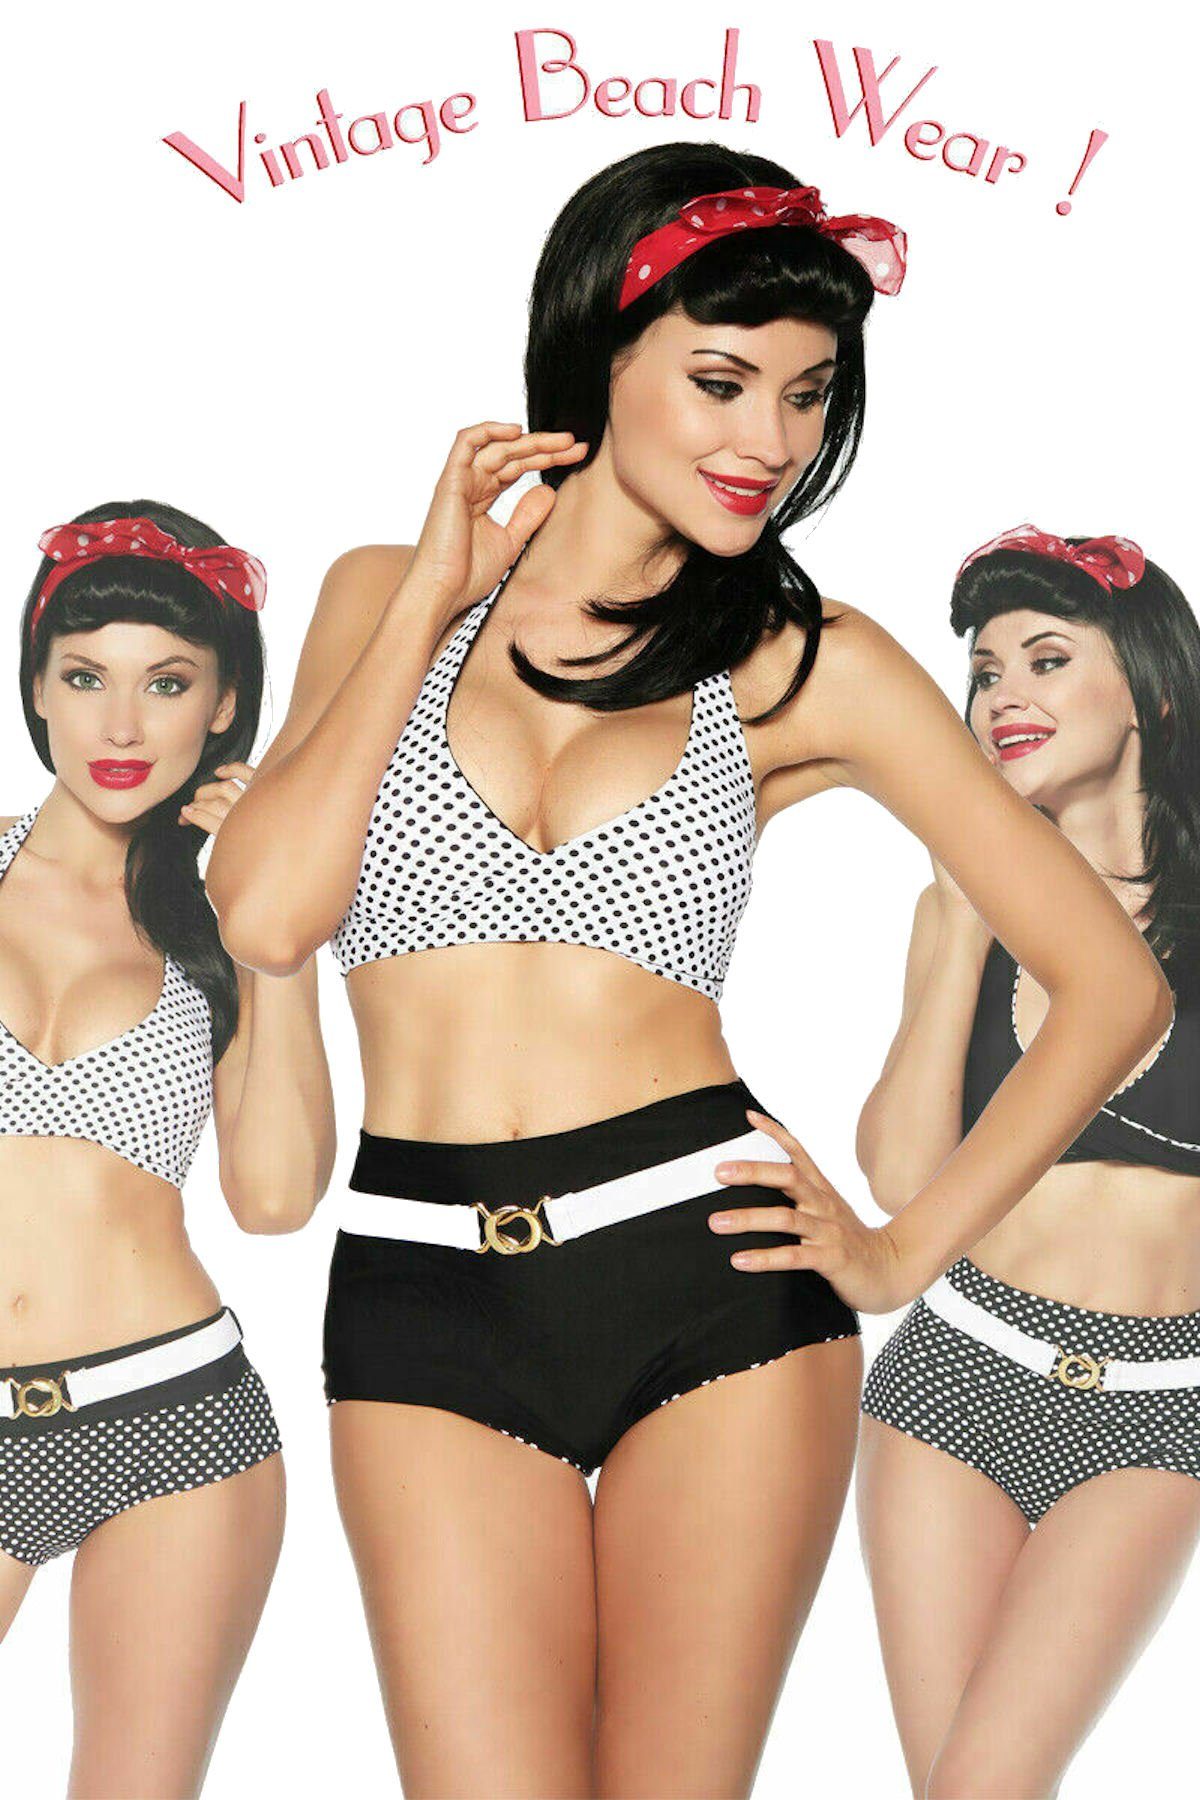 Samegame Triangel-Bikini Rockabilly Wendebikini mit Gürte Vintage-Bikini Set l schwarz/weiß/dots